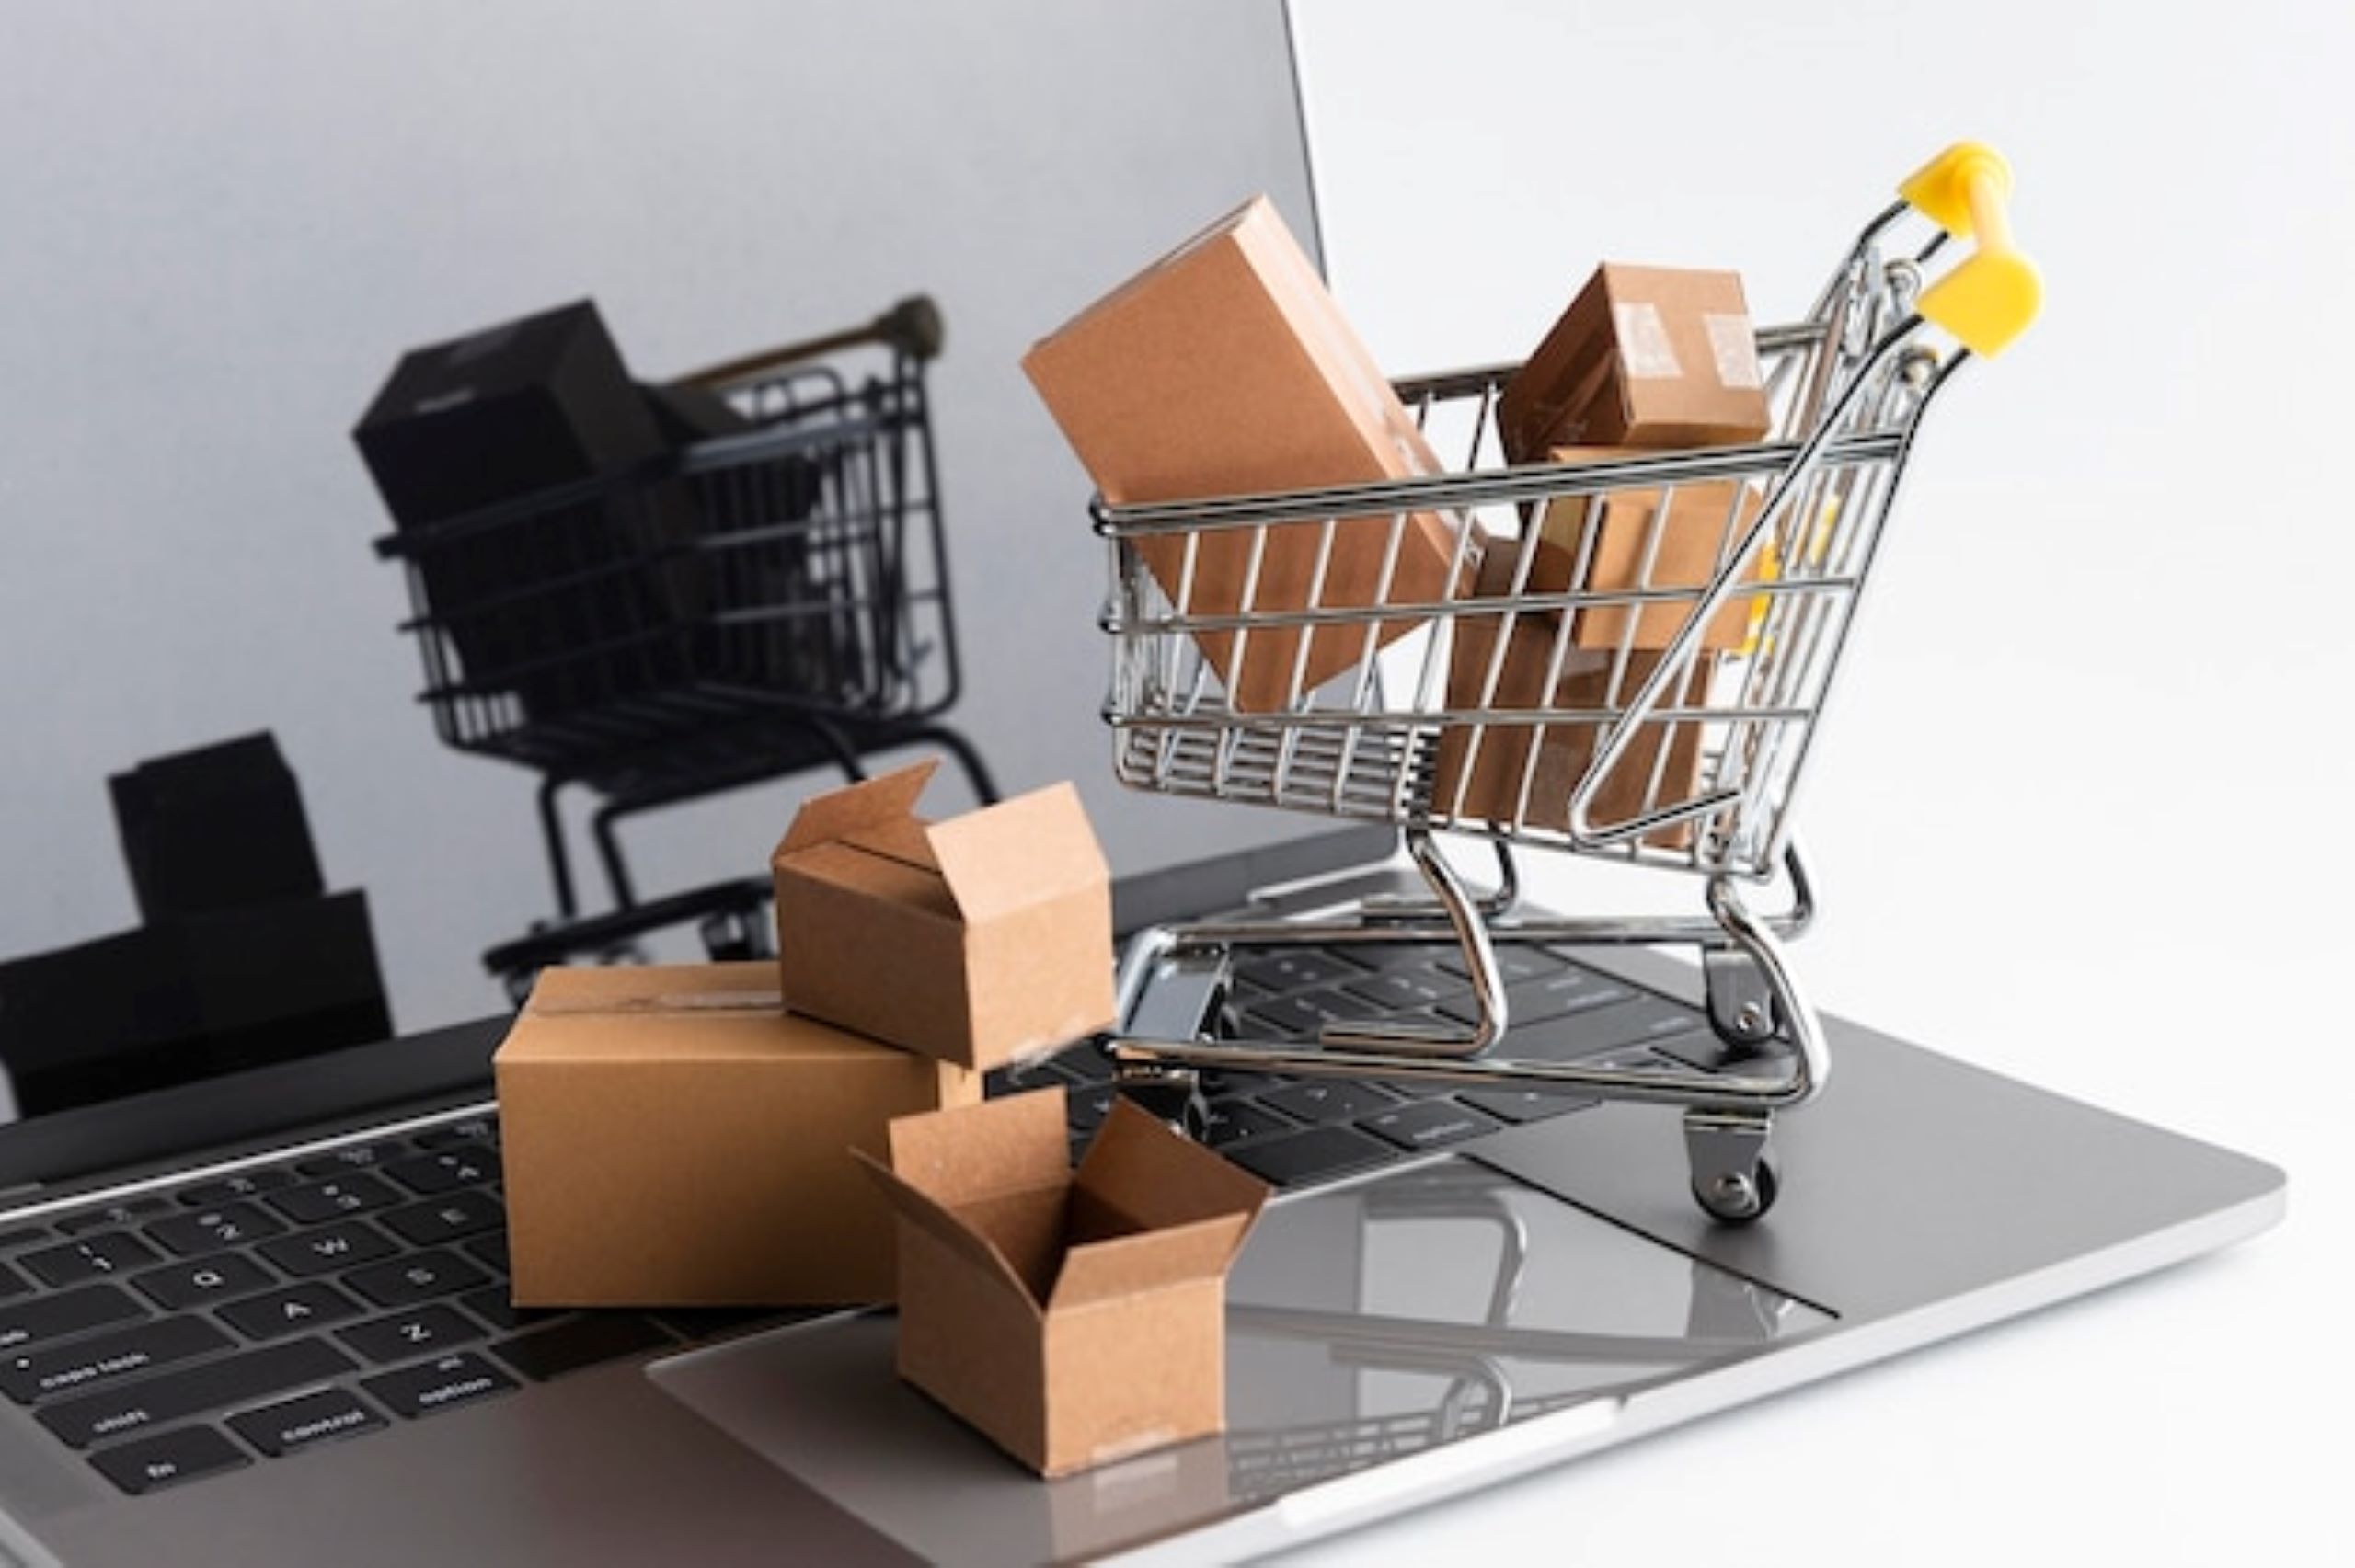 O e-commerce revolucionou a forma como as pessoas fazem compras, proporcionando conveniência e acesso a uma variedade de produtos e serviços.